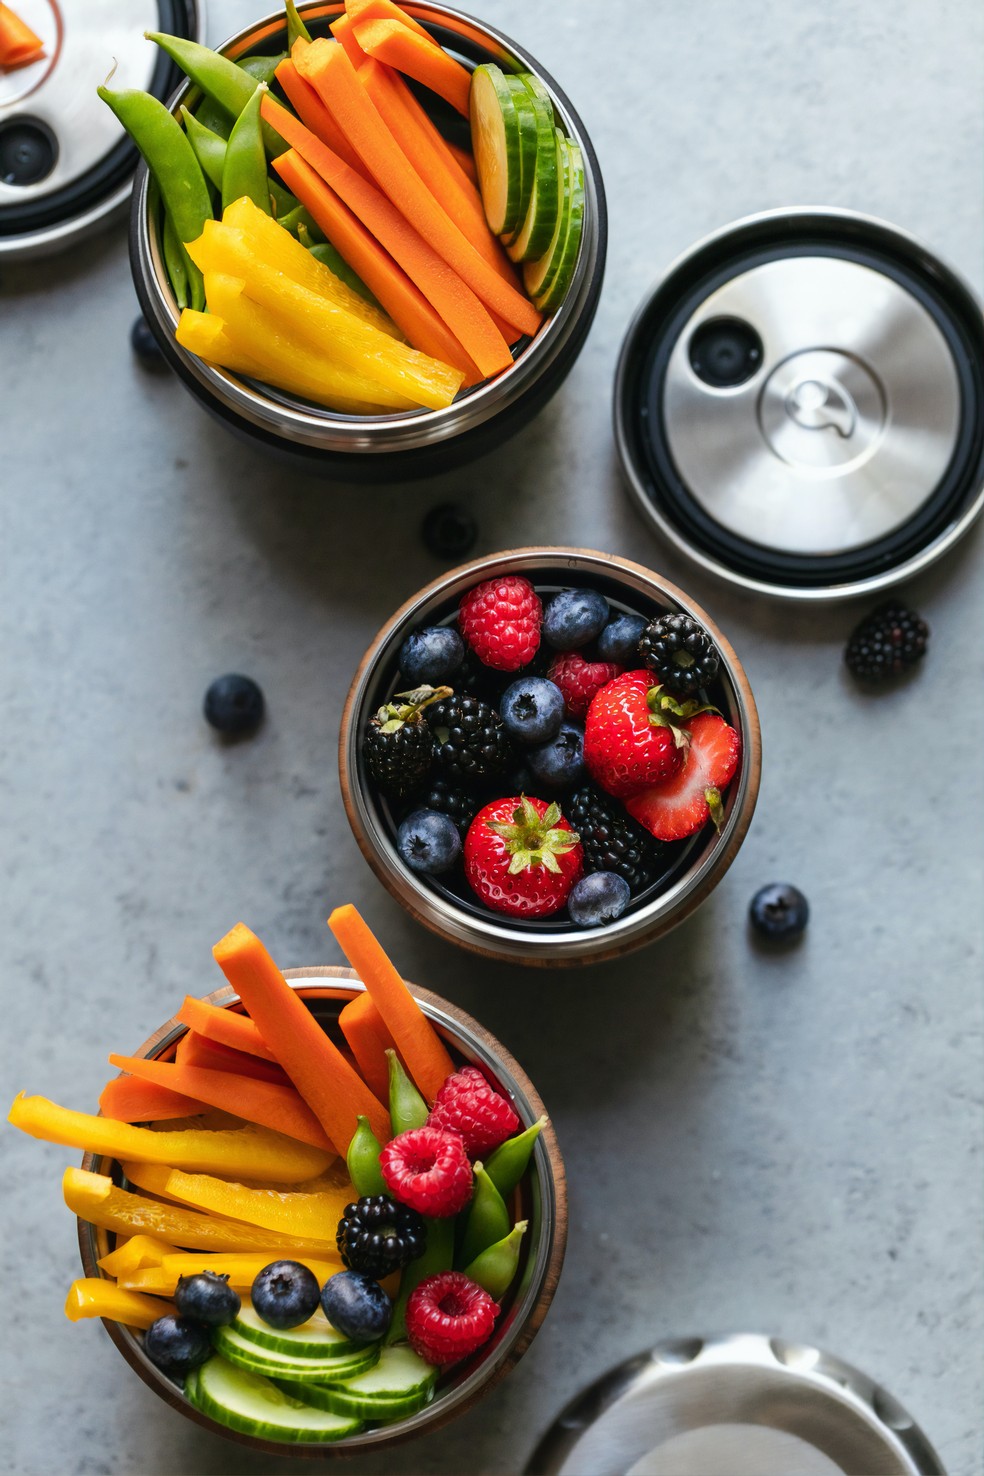 Frutas e em legumes de cor alaranjada ou vermelha ajudam na recuperação da pele — Foto: Unsplash